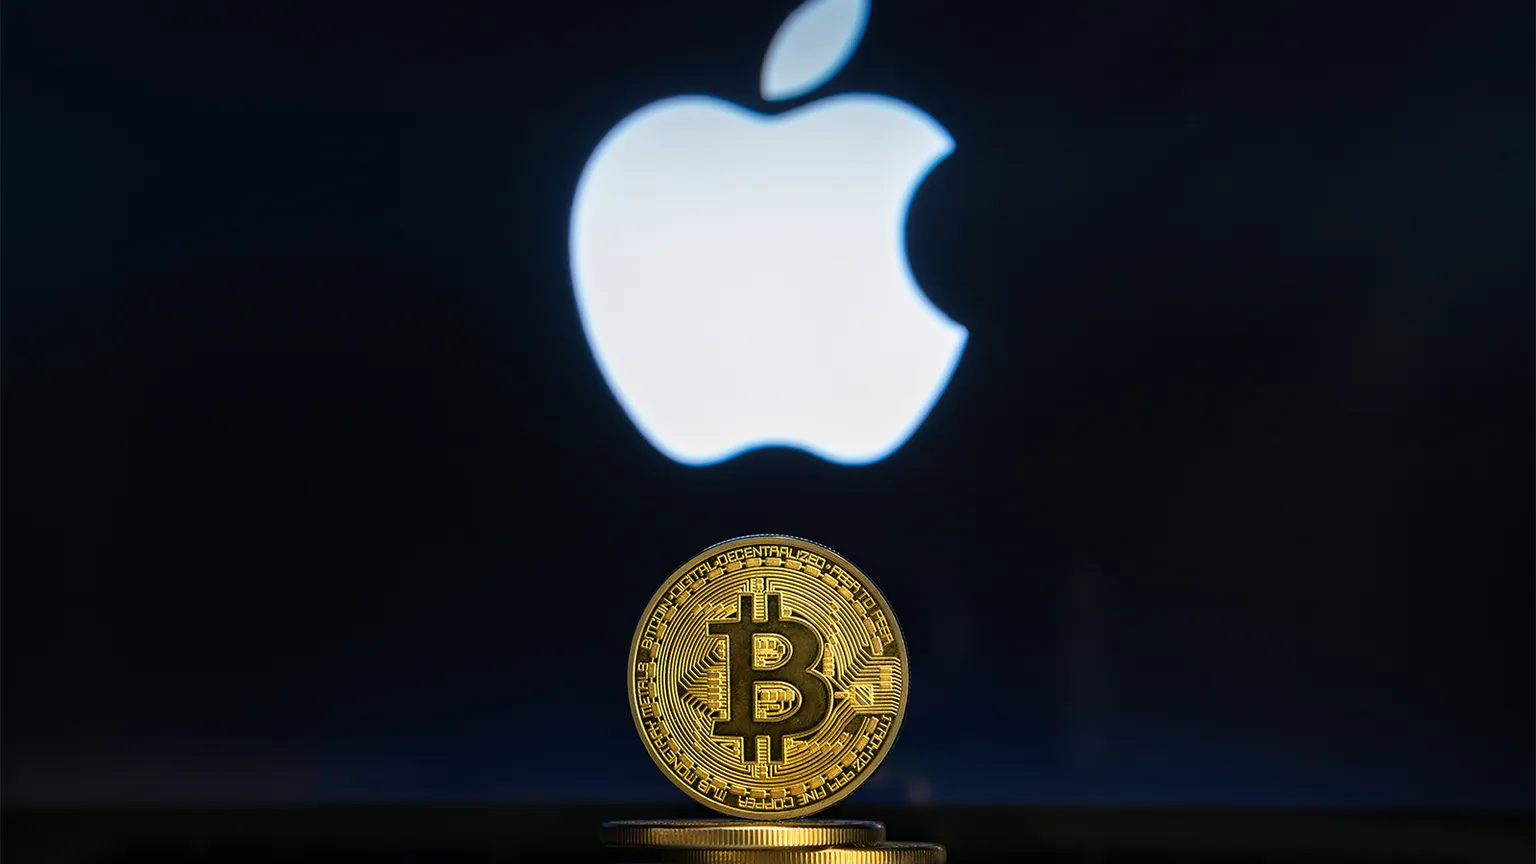 Los valores tecnológicos como Apple y el Bitcoin suben al unísono. IMAGEN: Shutterstock